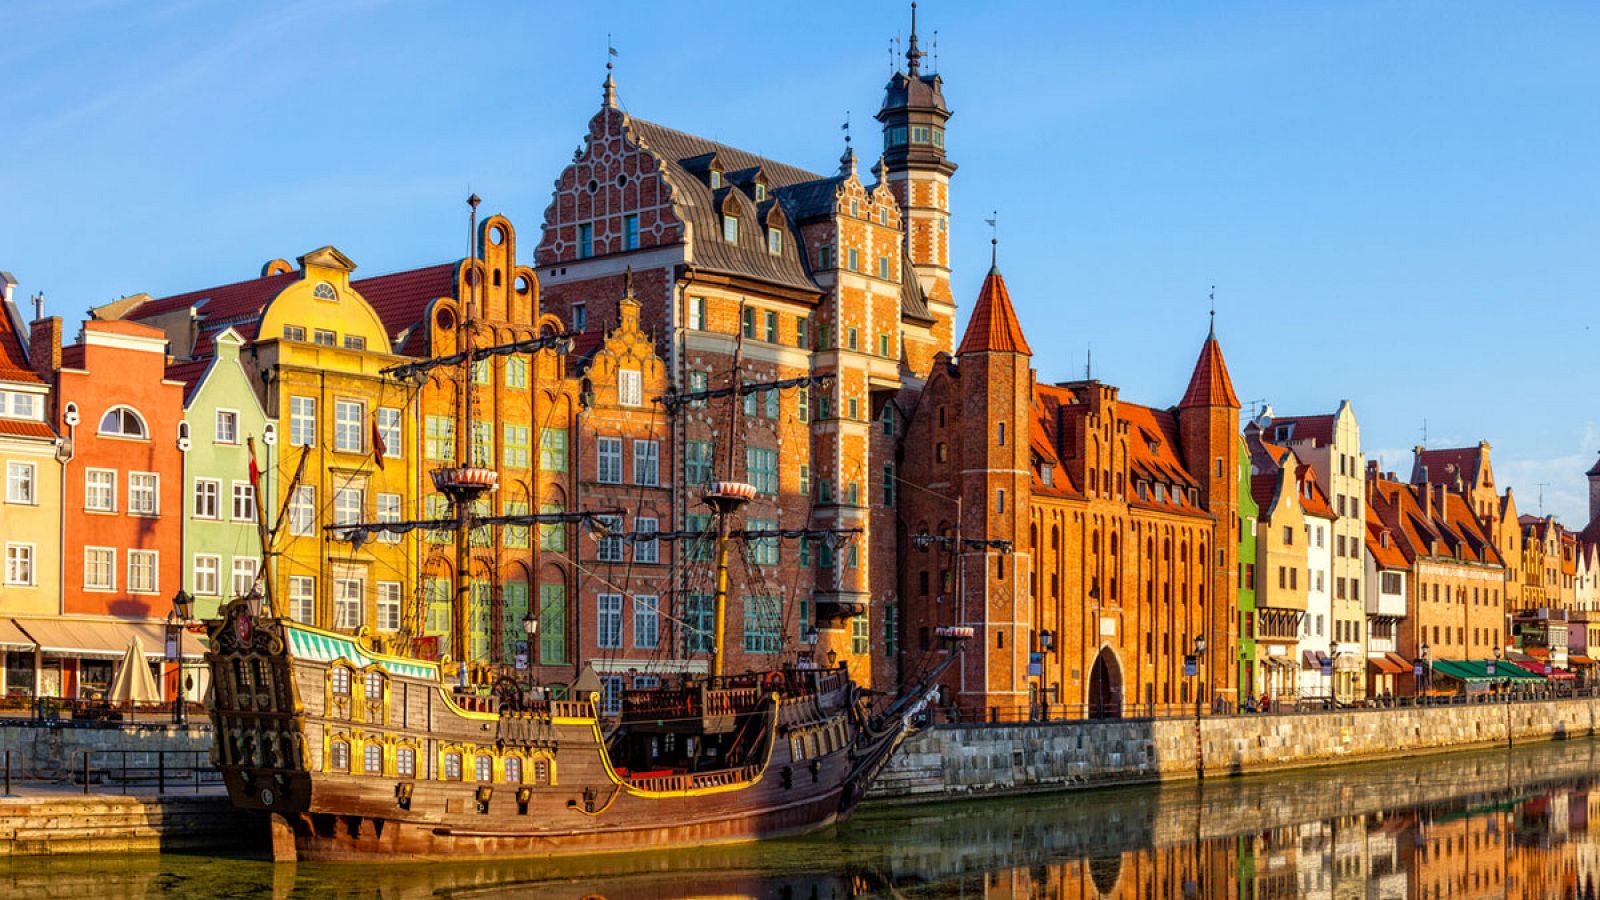 Considerada una ciudad abierta y generosa, Gdansk ha destacado, desde el restablecimiento de la democracia en Polonia hace treinta años, por su dinamismo económico, apertura, cohesión ciudadana y carácter tolerante